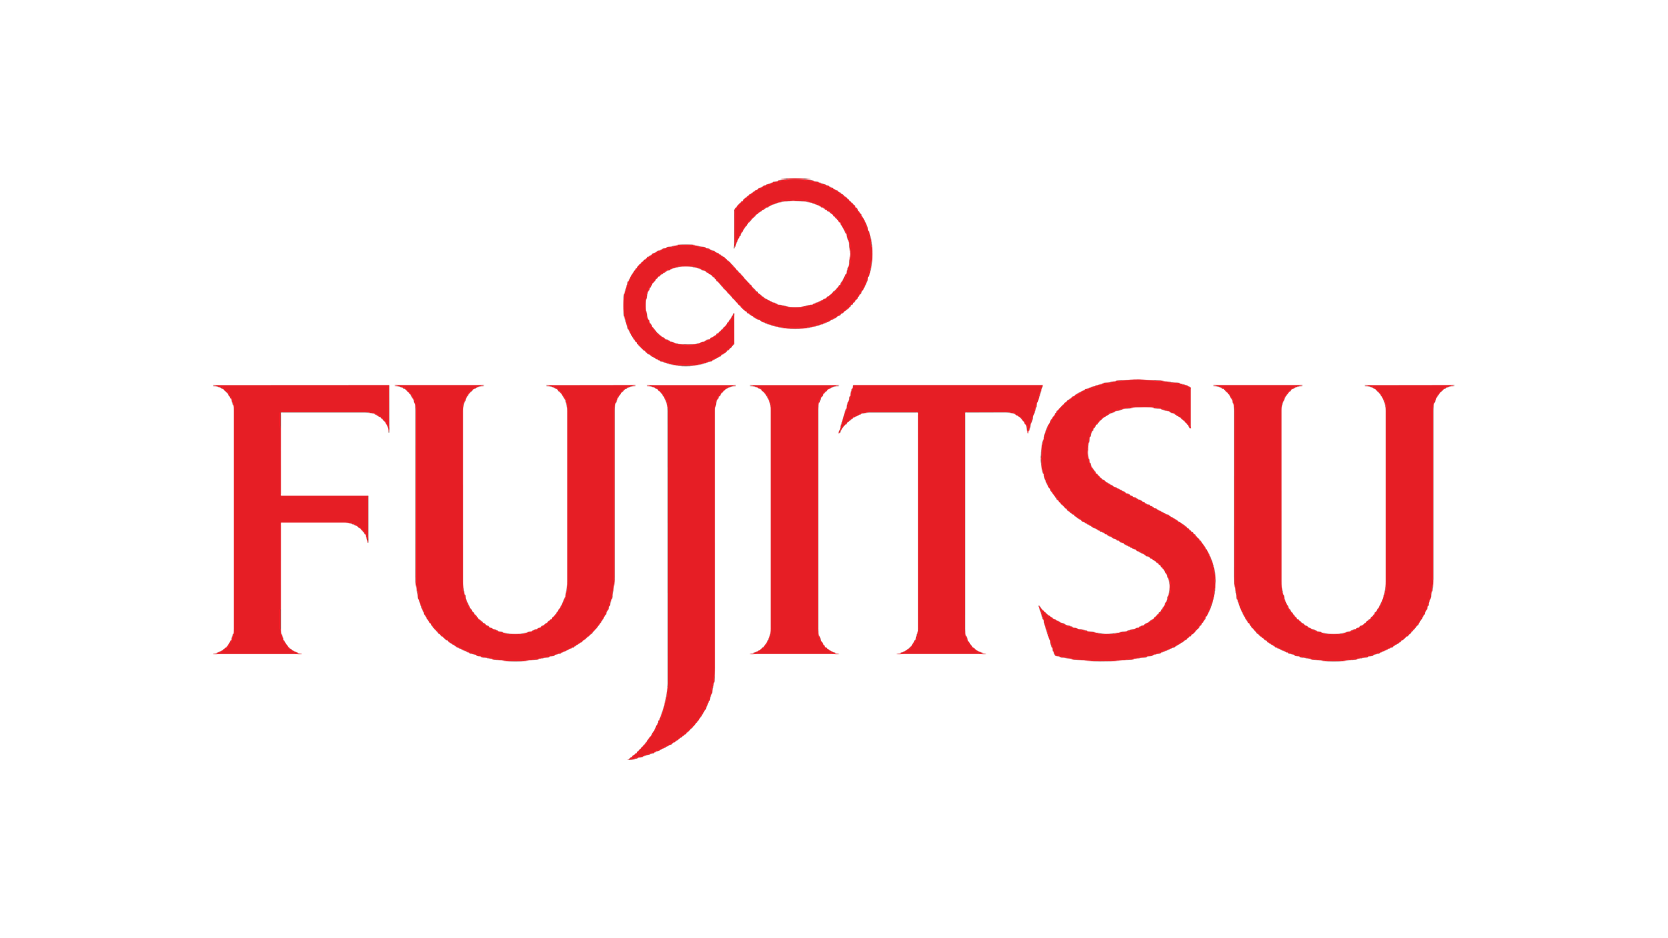 Fujitsu